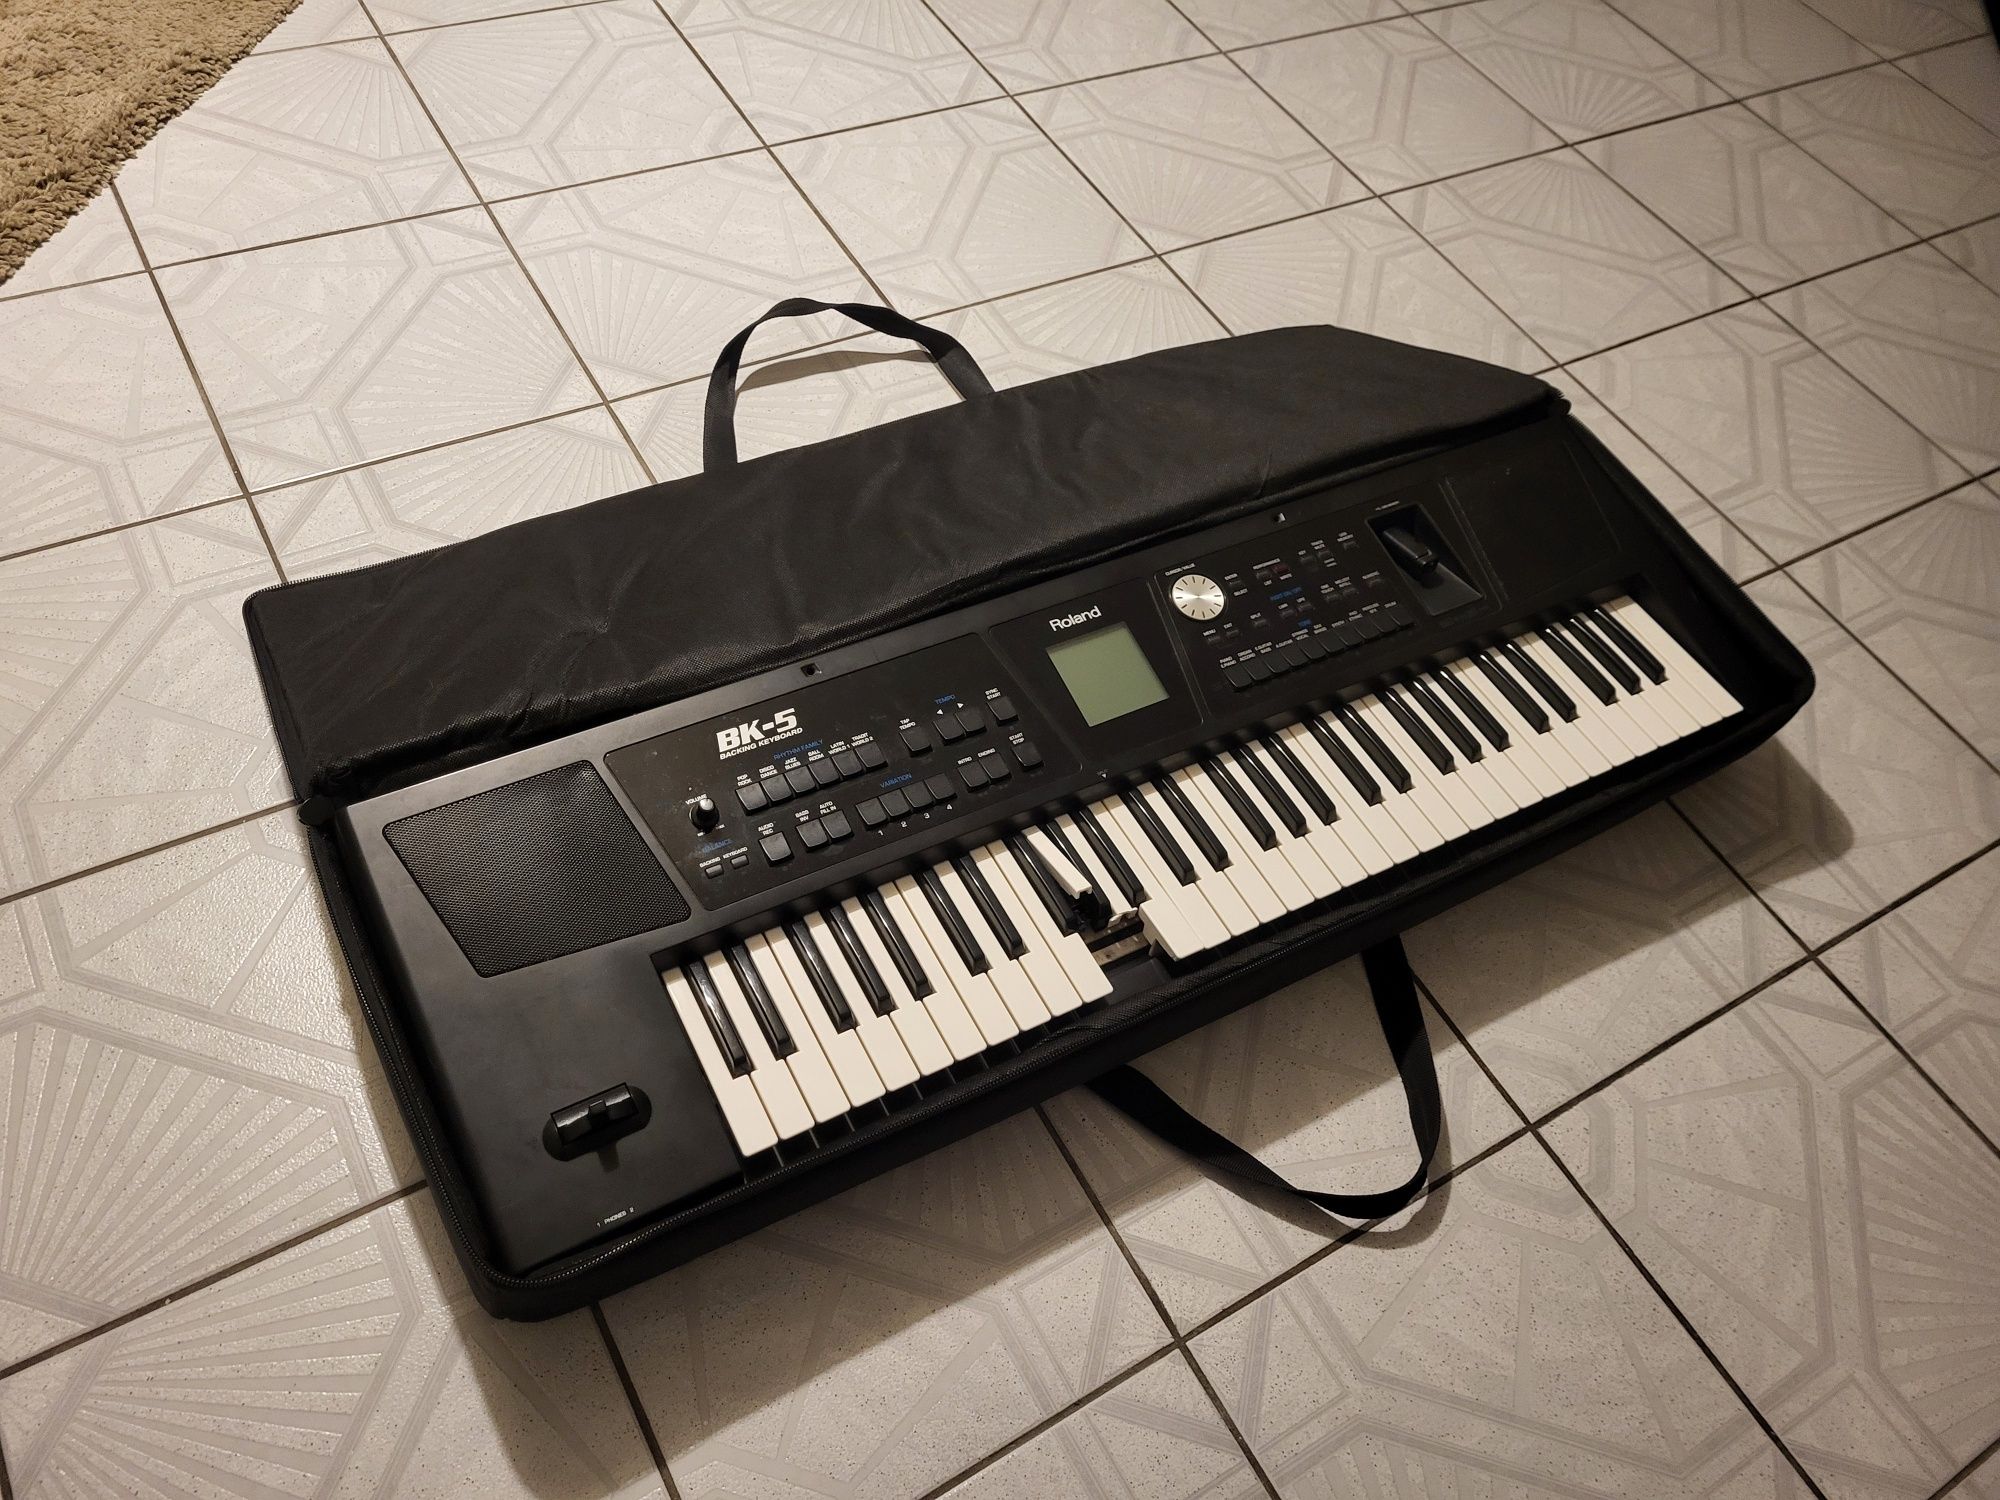 Keyboard Roland BK 5 organy sprawne okazja pokrowiec Bk 3